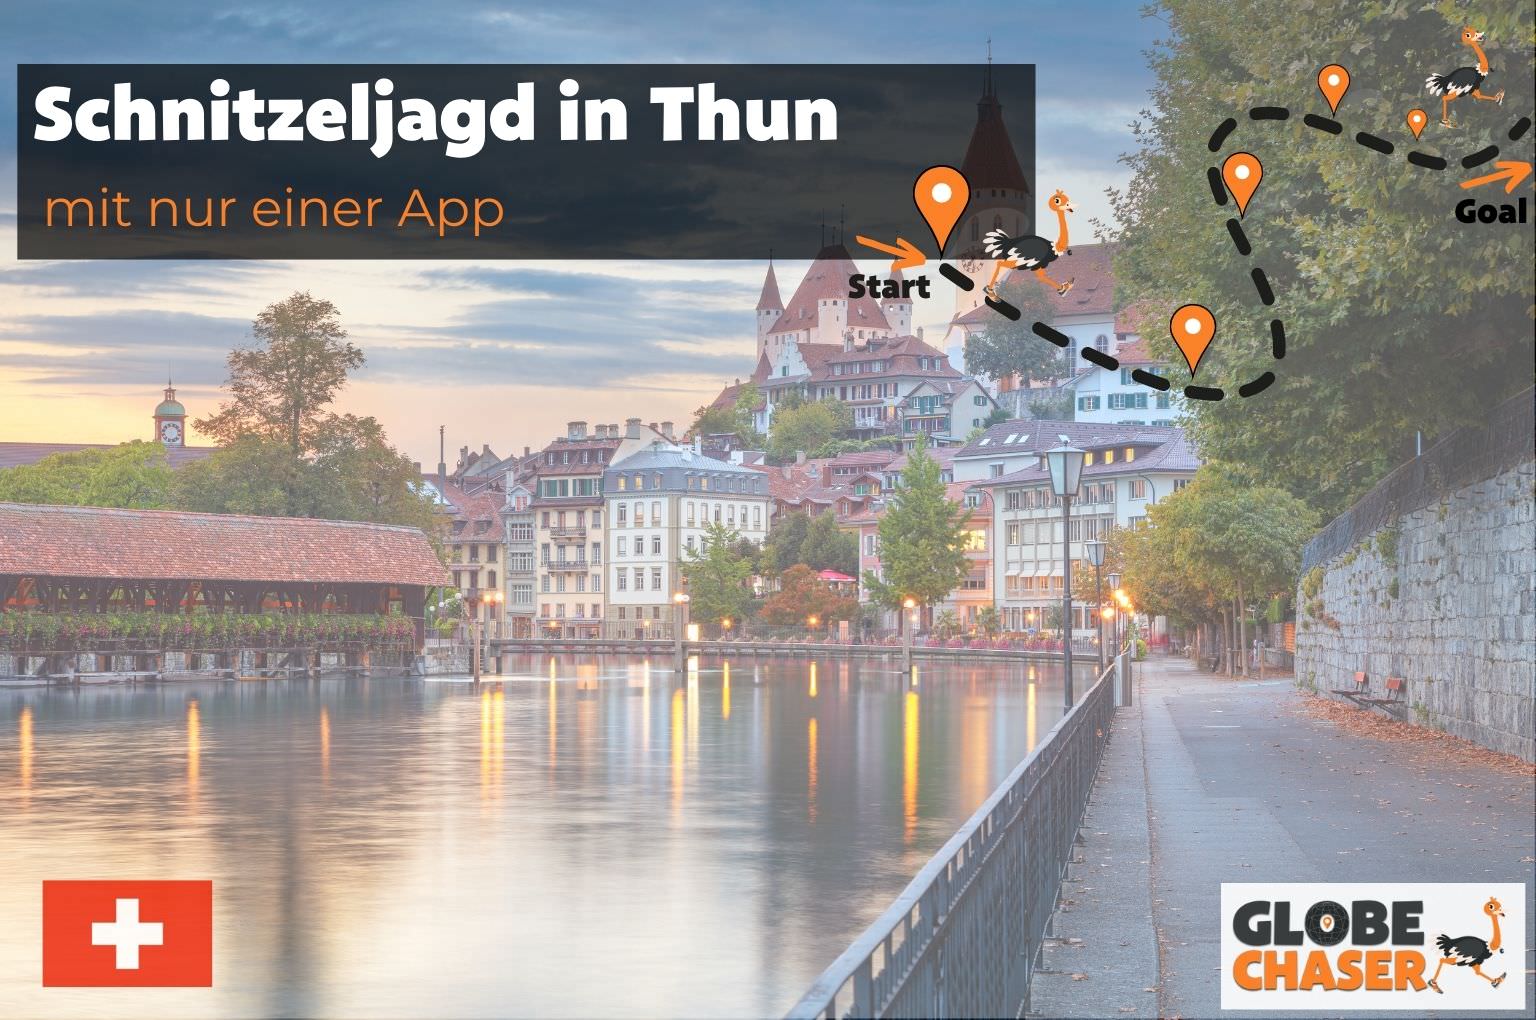 Schnitzeljagd in Thun mit App - Globe Chaser Erlebnisse Schweiz